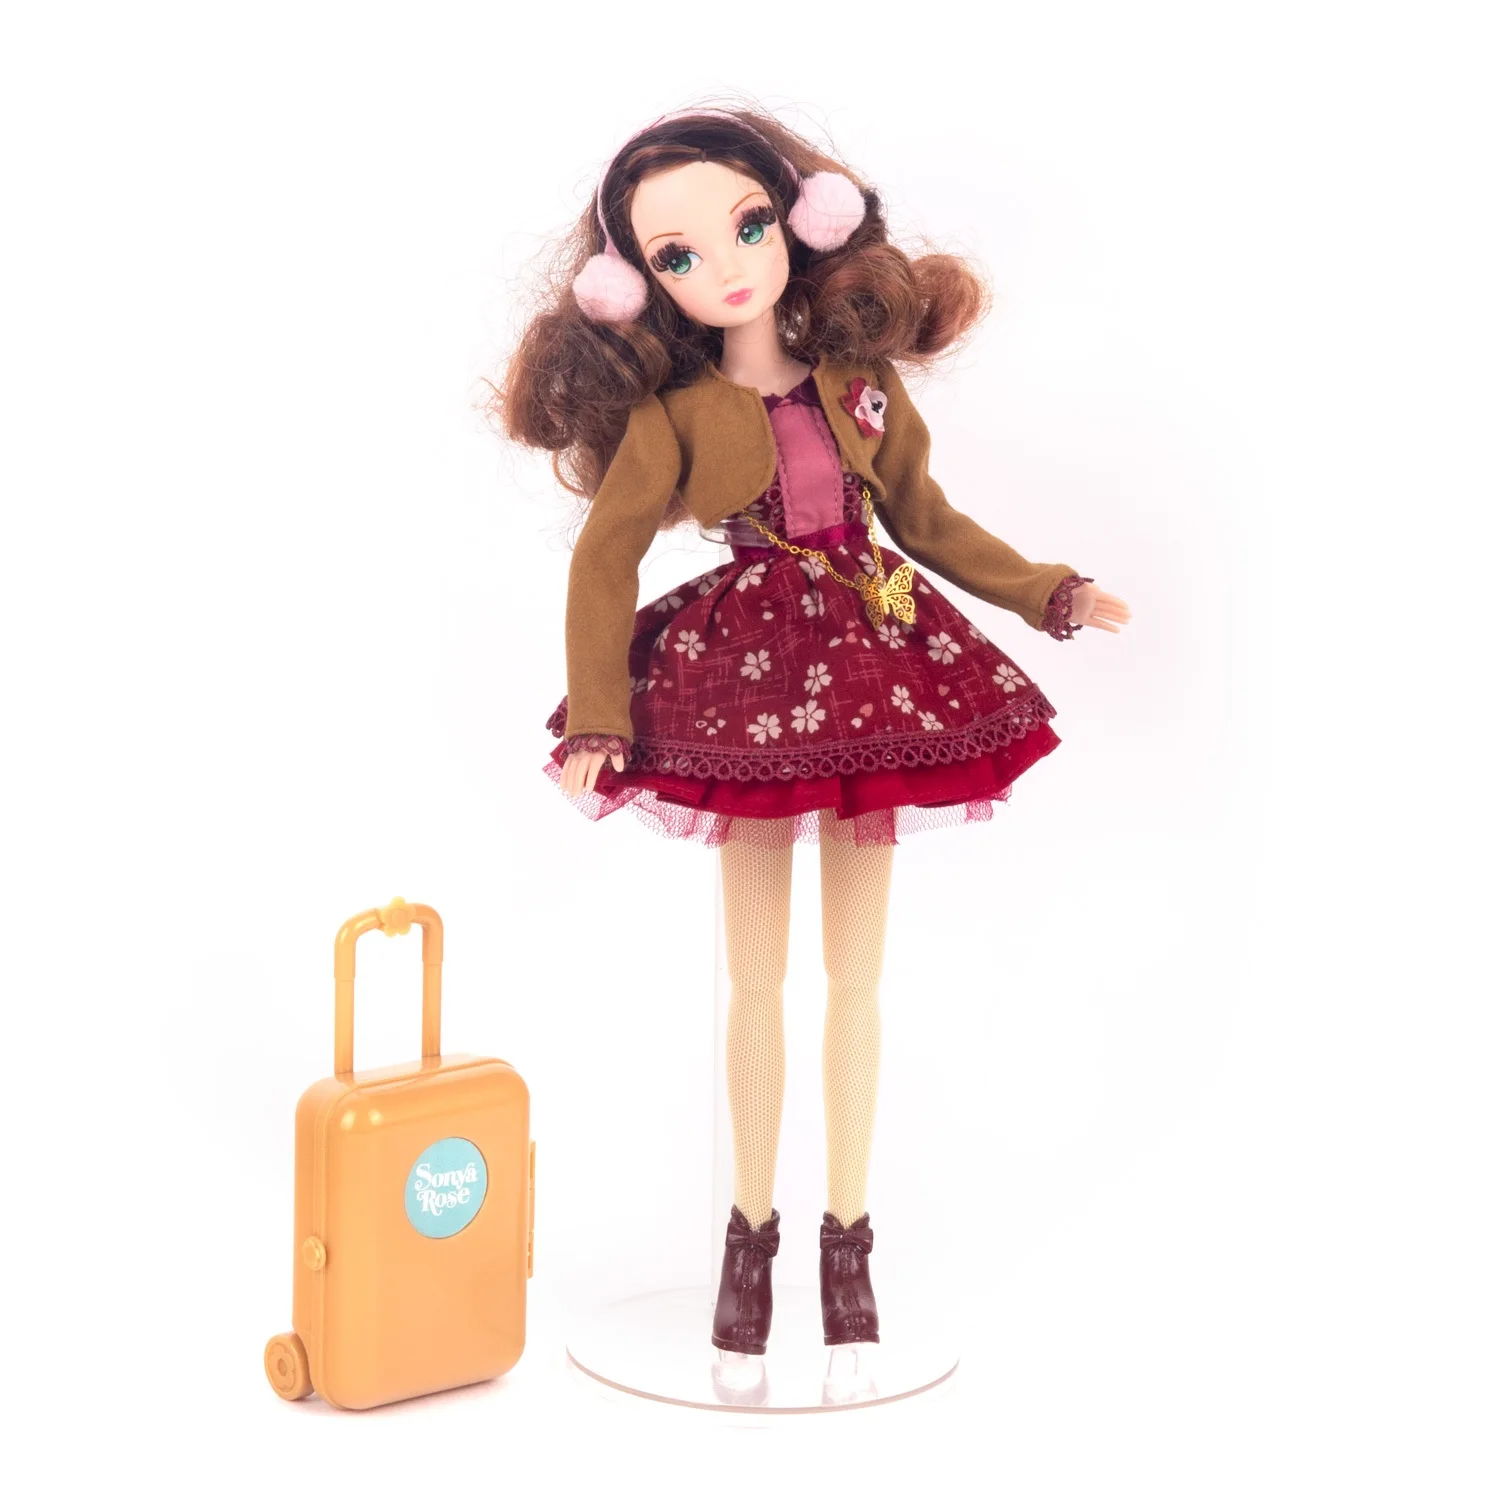 Кукла Sonya Rose серия &quotDaily collection" Путешествие в Японию | Игрушки и хобби